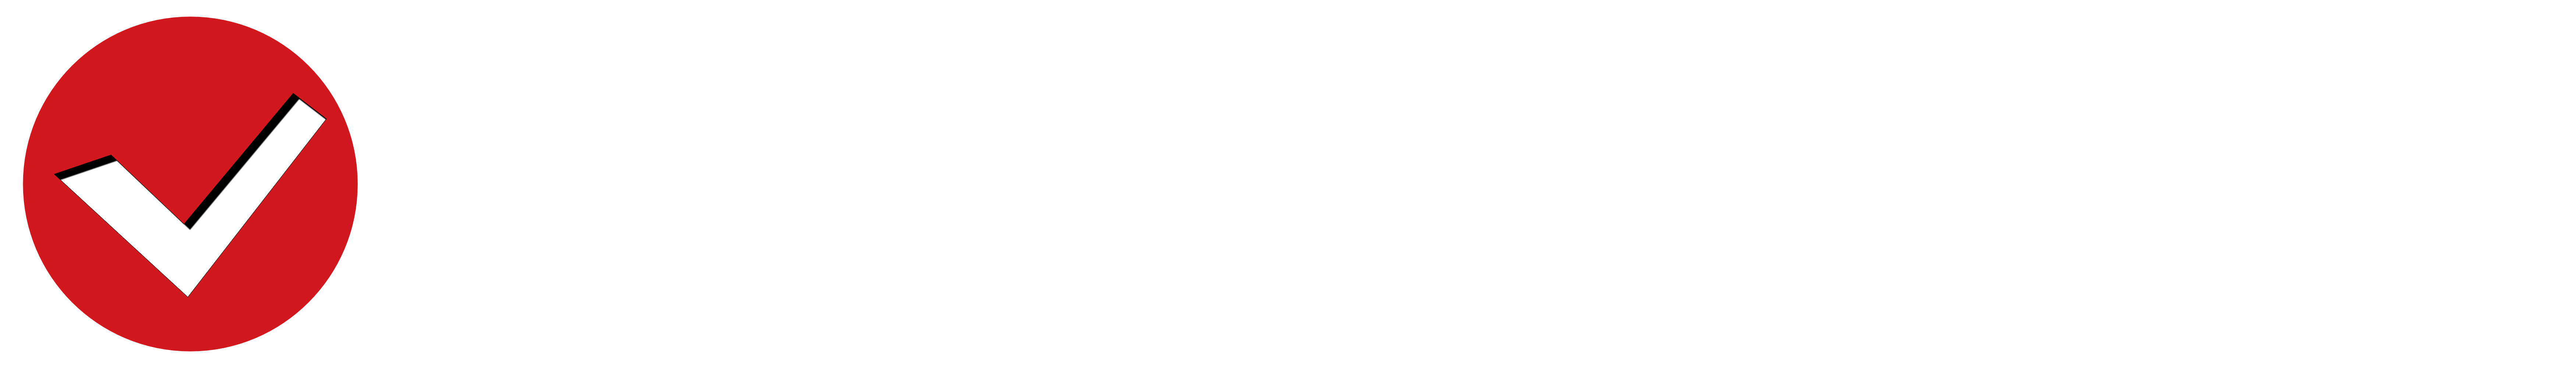 Scheckhefte.com